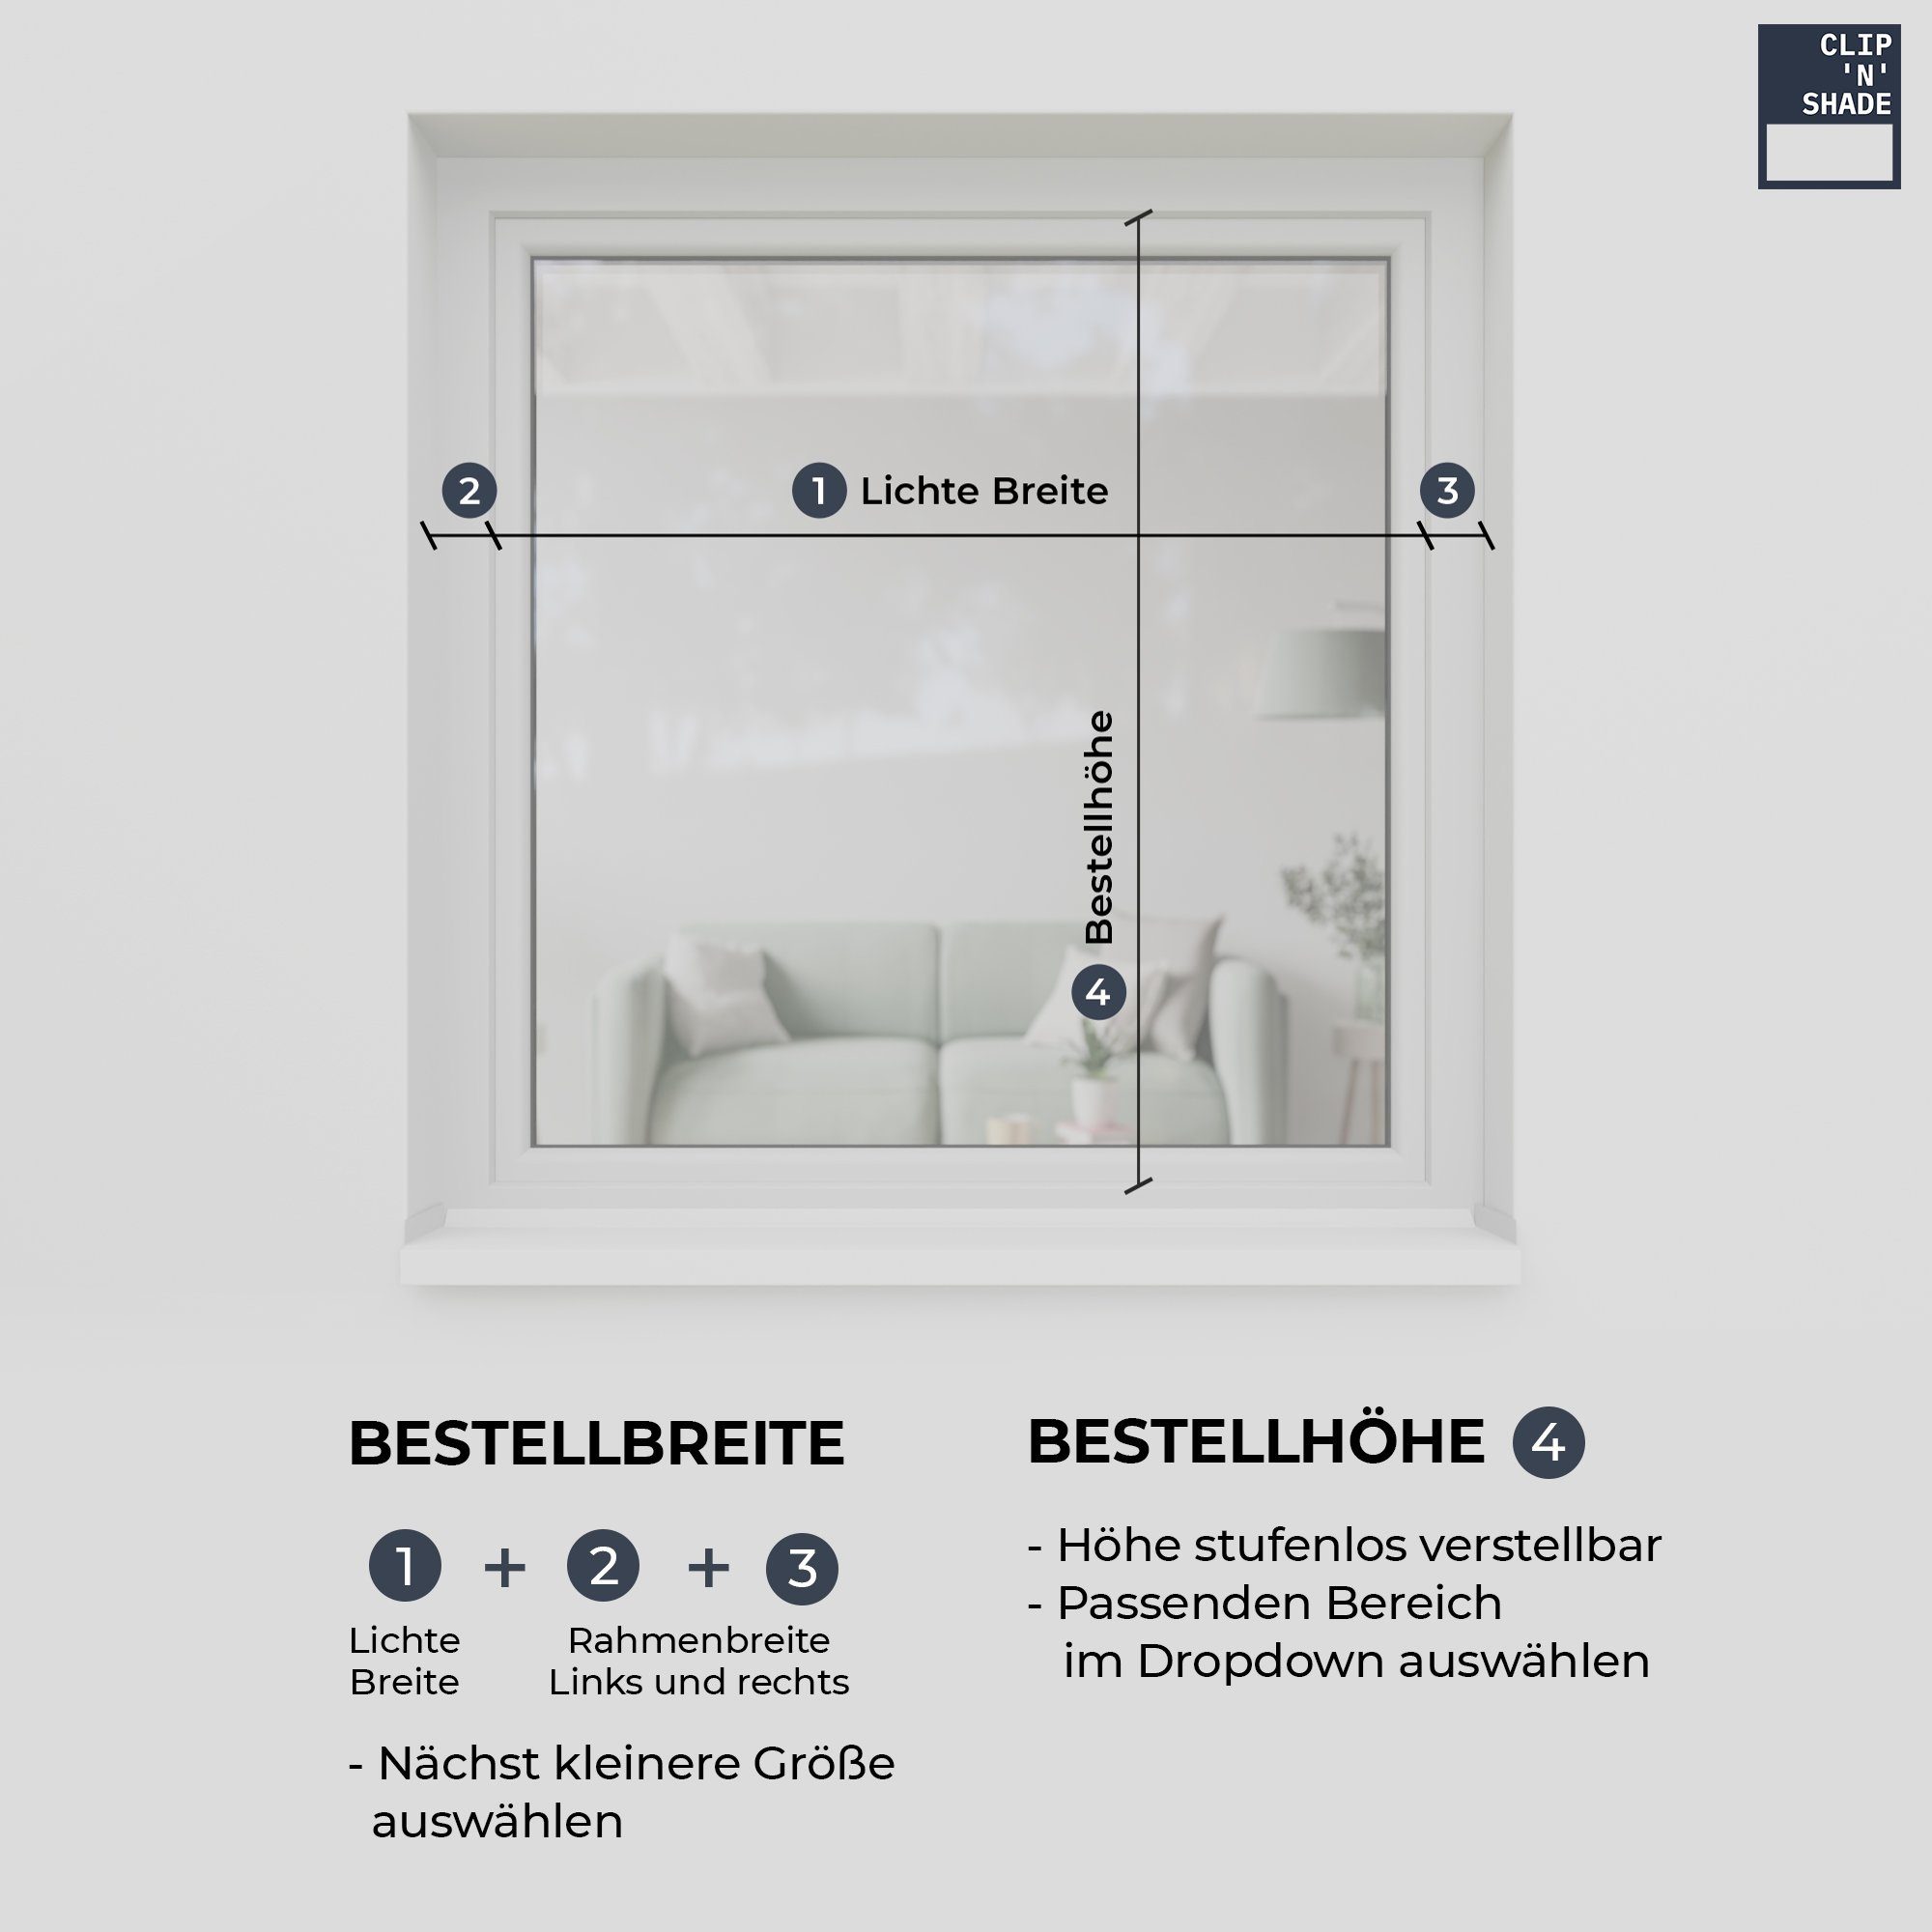 Fenster, am Klemmmontage, Grau hochwertige CLIP`N`SHADE Außen Aluminiumprofile Aussenrollo für Balkontüren, Rollo CLIP`N`SHADE,